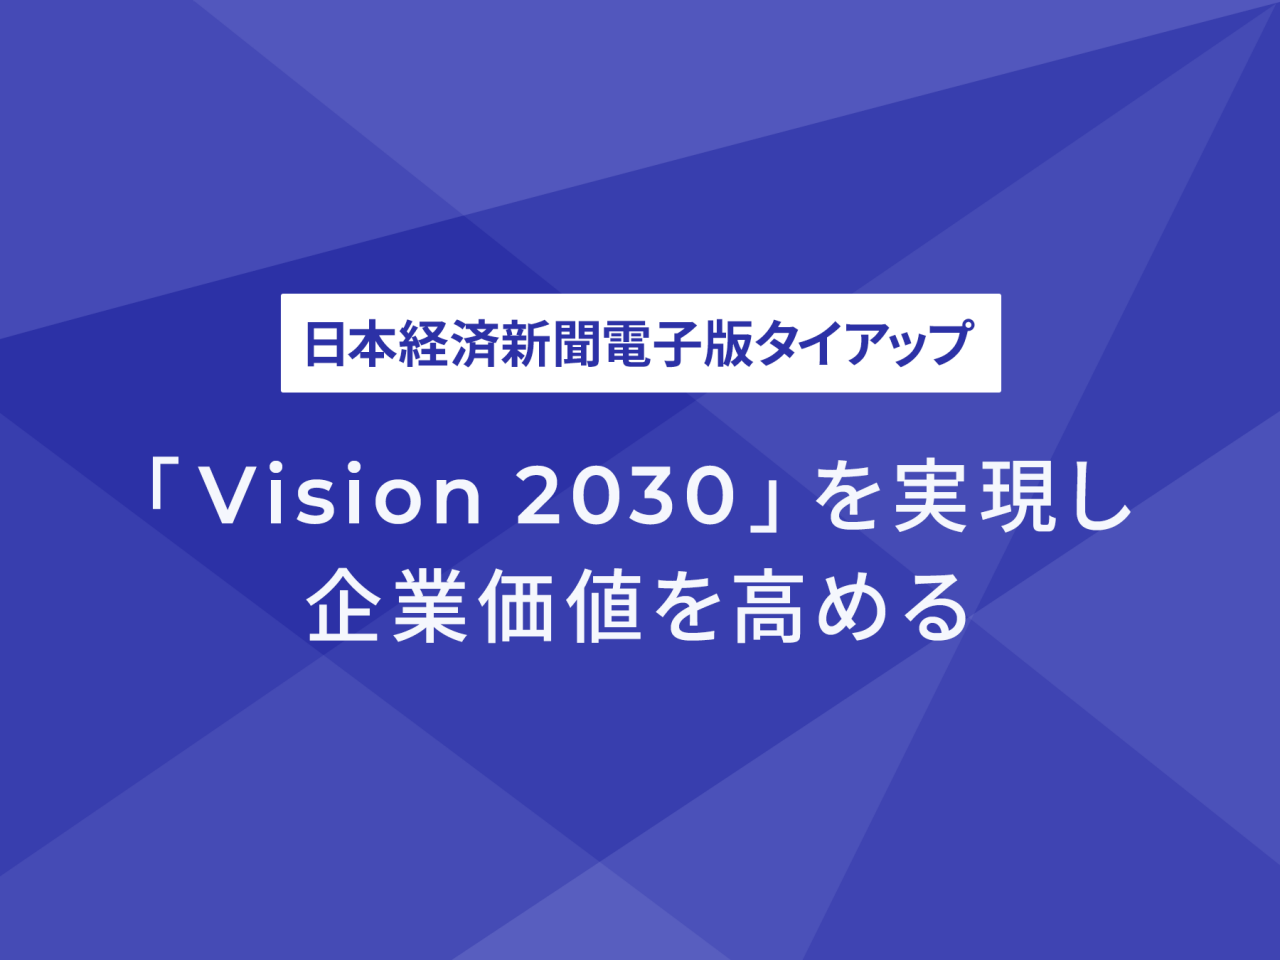 日本経済新聞社タイアップ 「Vision 2030」を実現し企業価値を高める